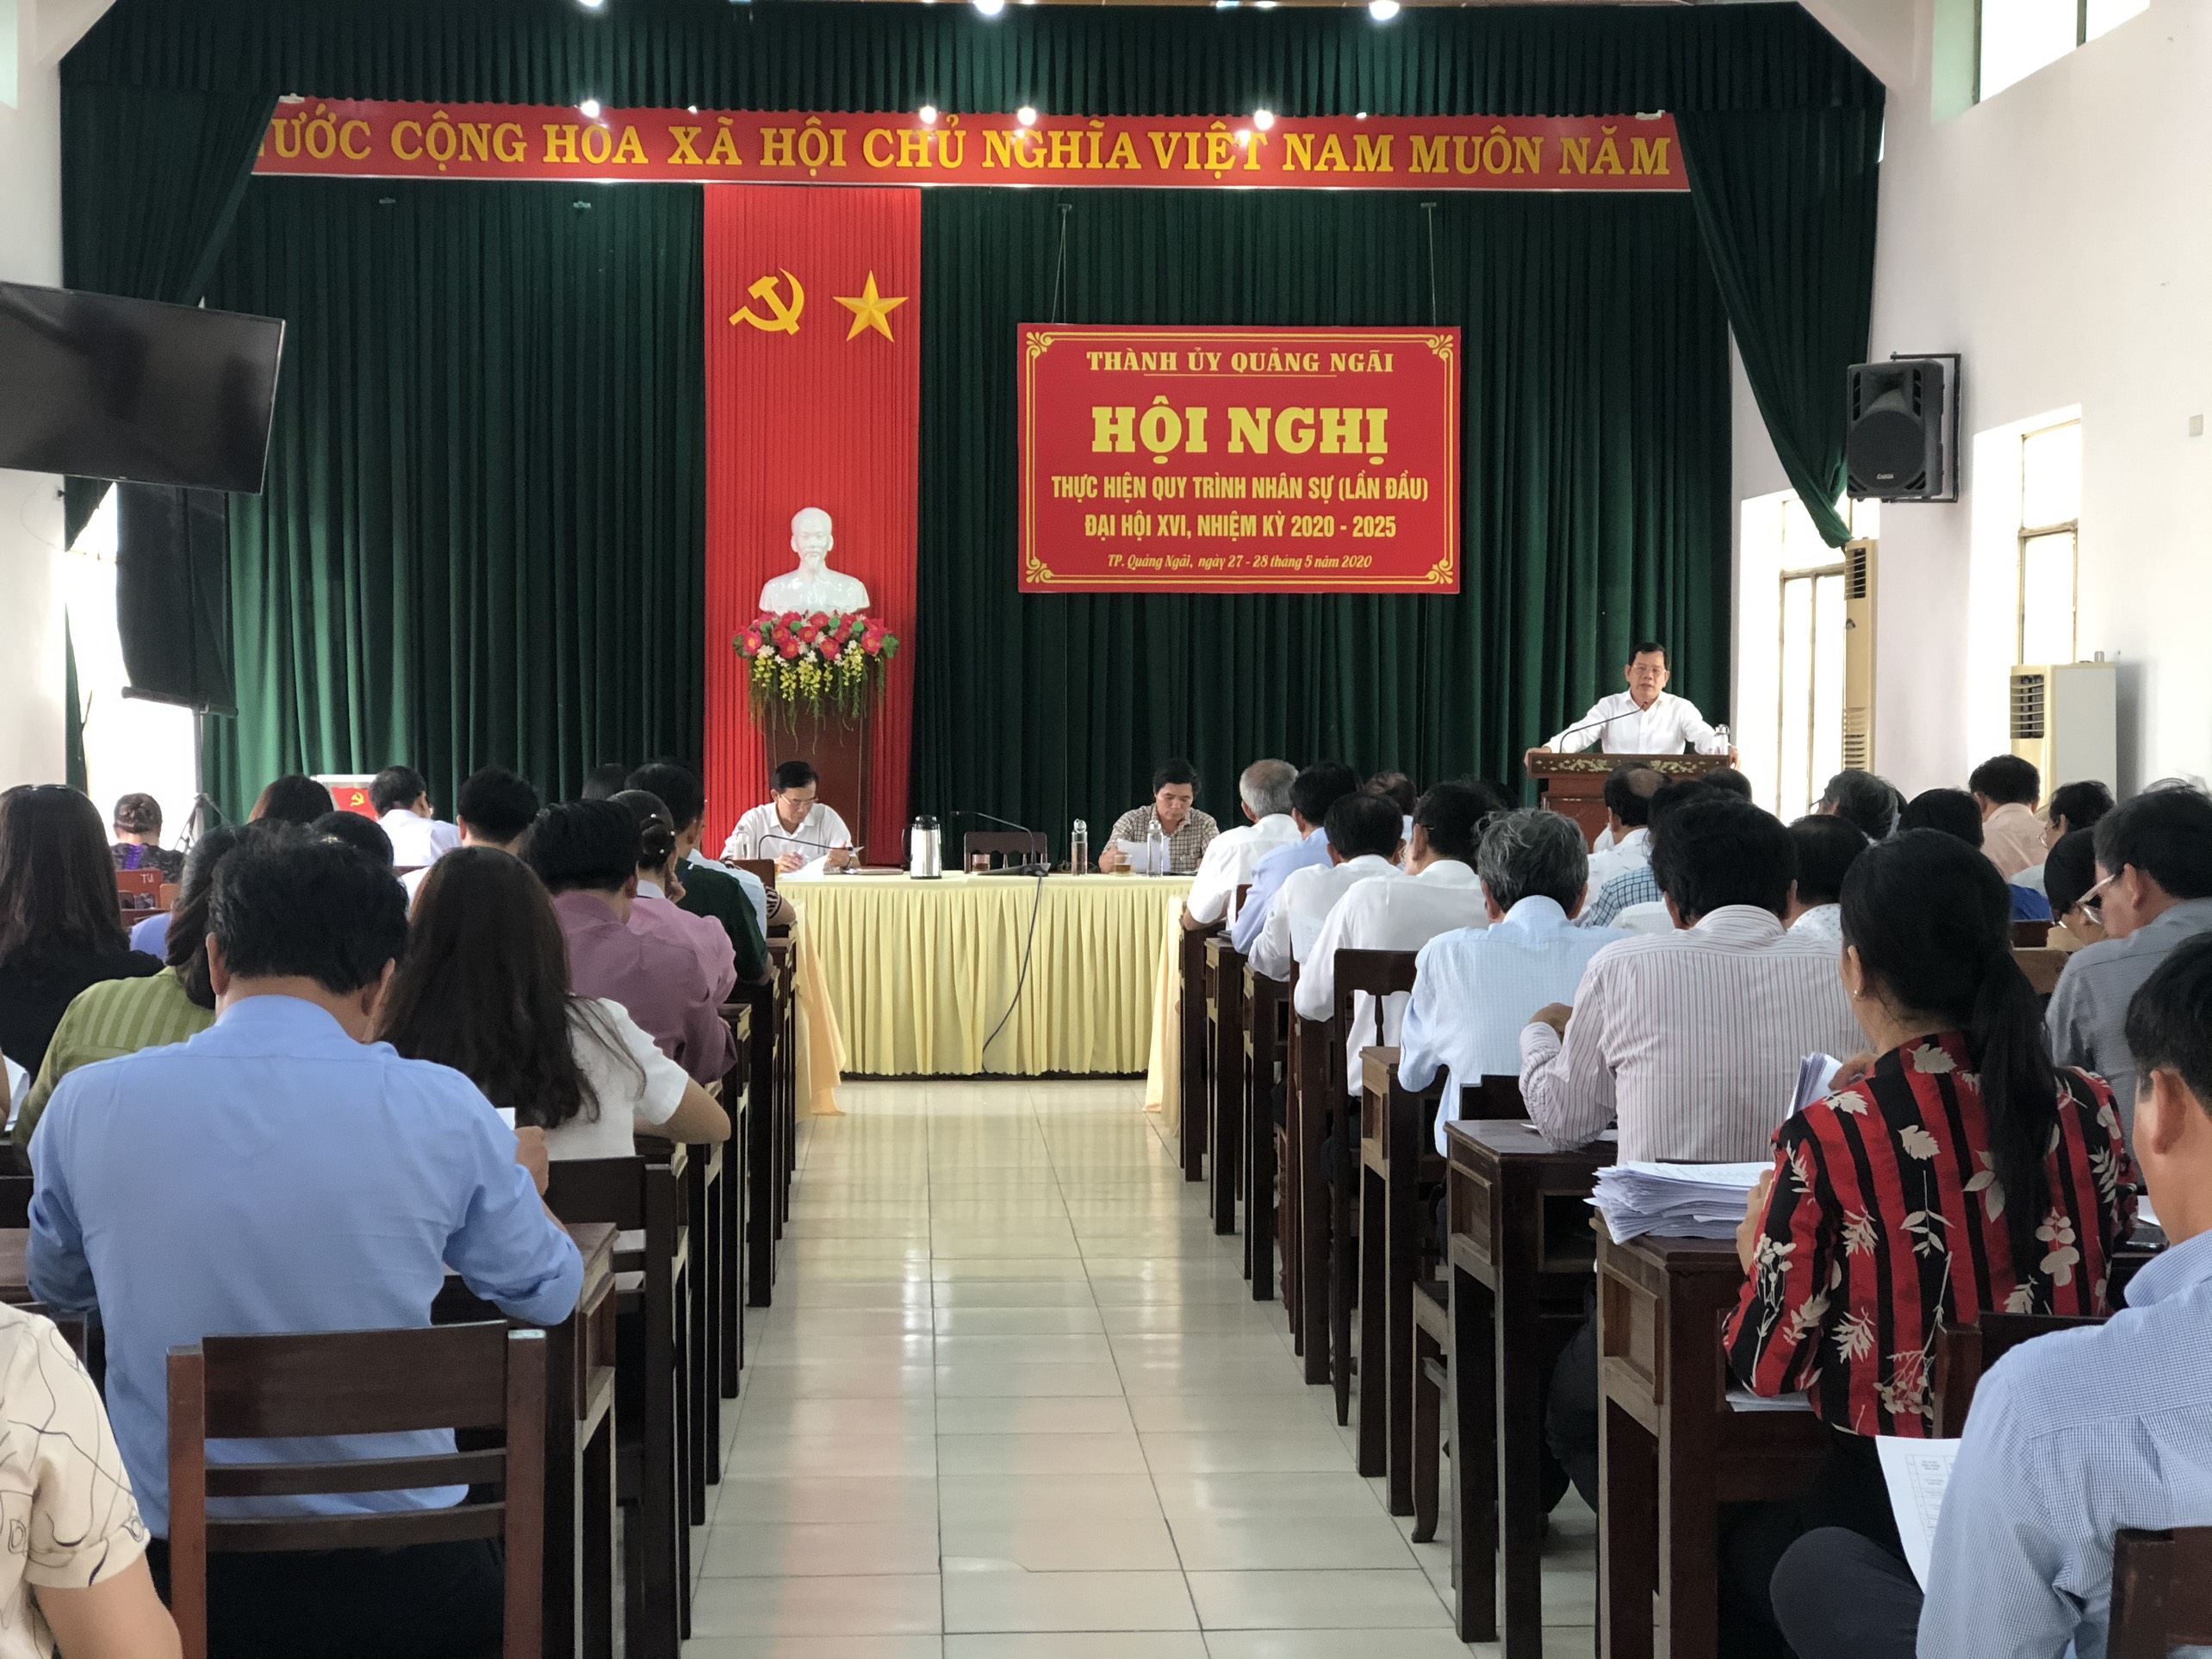 Thành ủy Quảng Ngãi tiếp tục thực hiện các quy trình về công tác nhân sự Đại hội đại biểu Đảng bộ thành phố Quảng Ngãi lần thứ XVI, nhiệm kỳ 2020 - 2025.